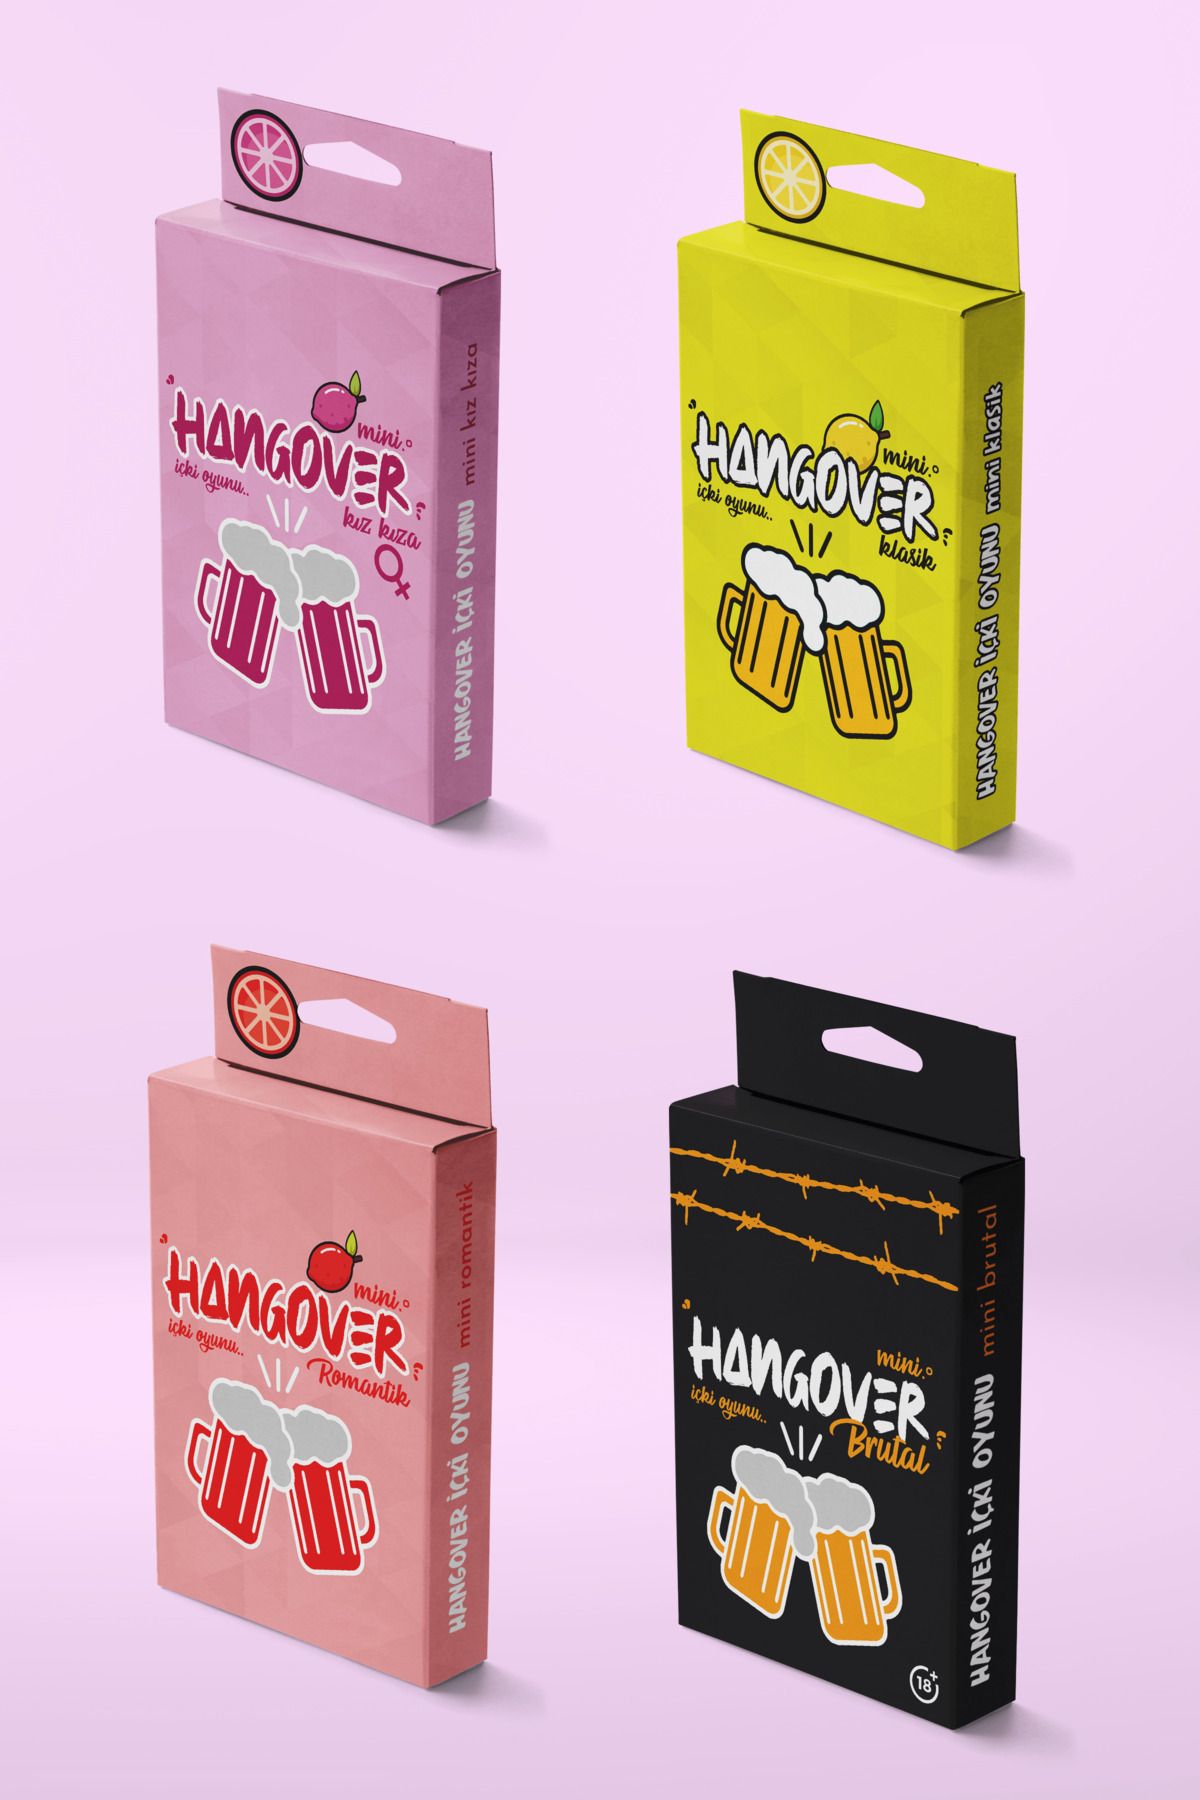 Planet Butik Mini Hangover 4lü Süper Eğlence Paketi - Klasik , Kız Kıza , Romantik ve Brutal içki Oyunu